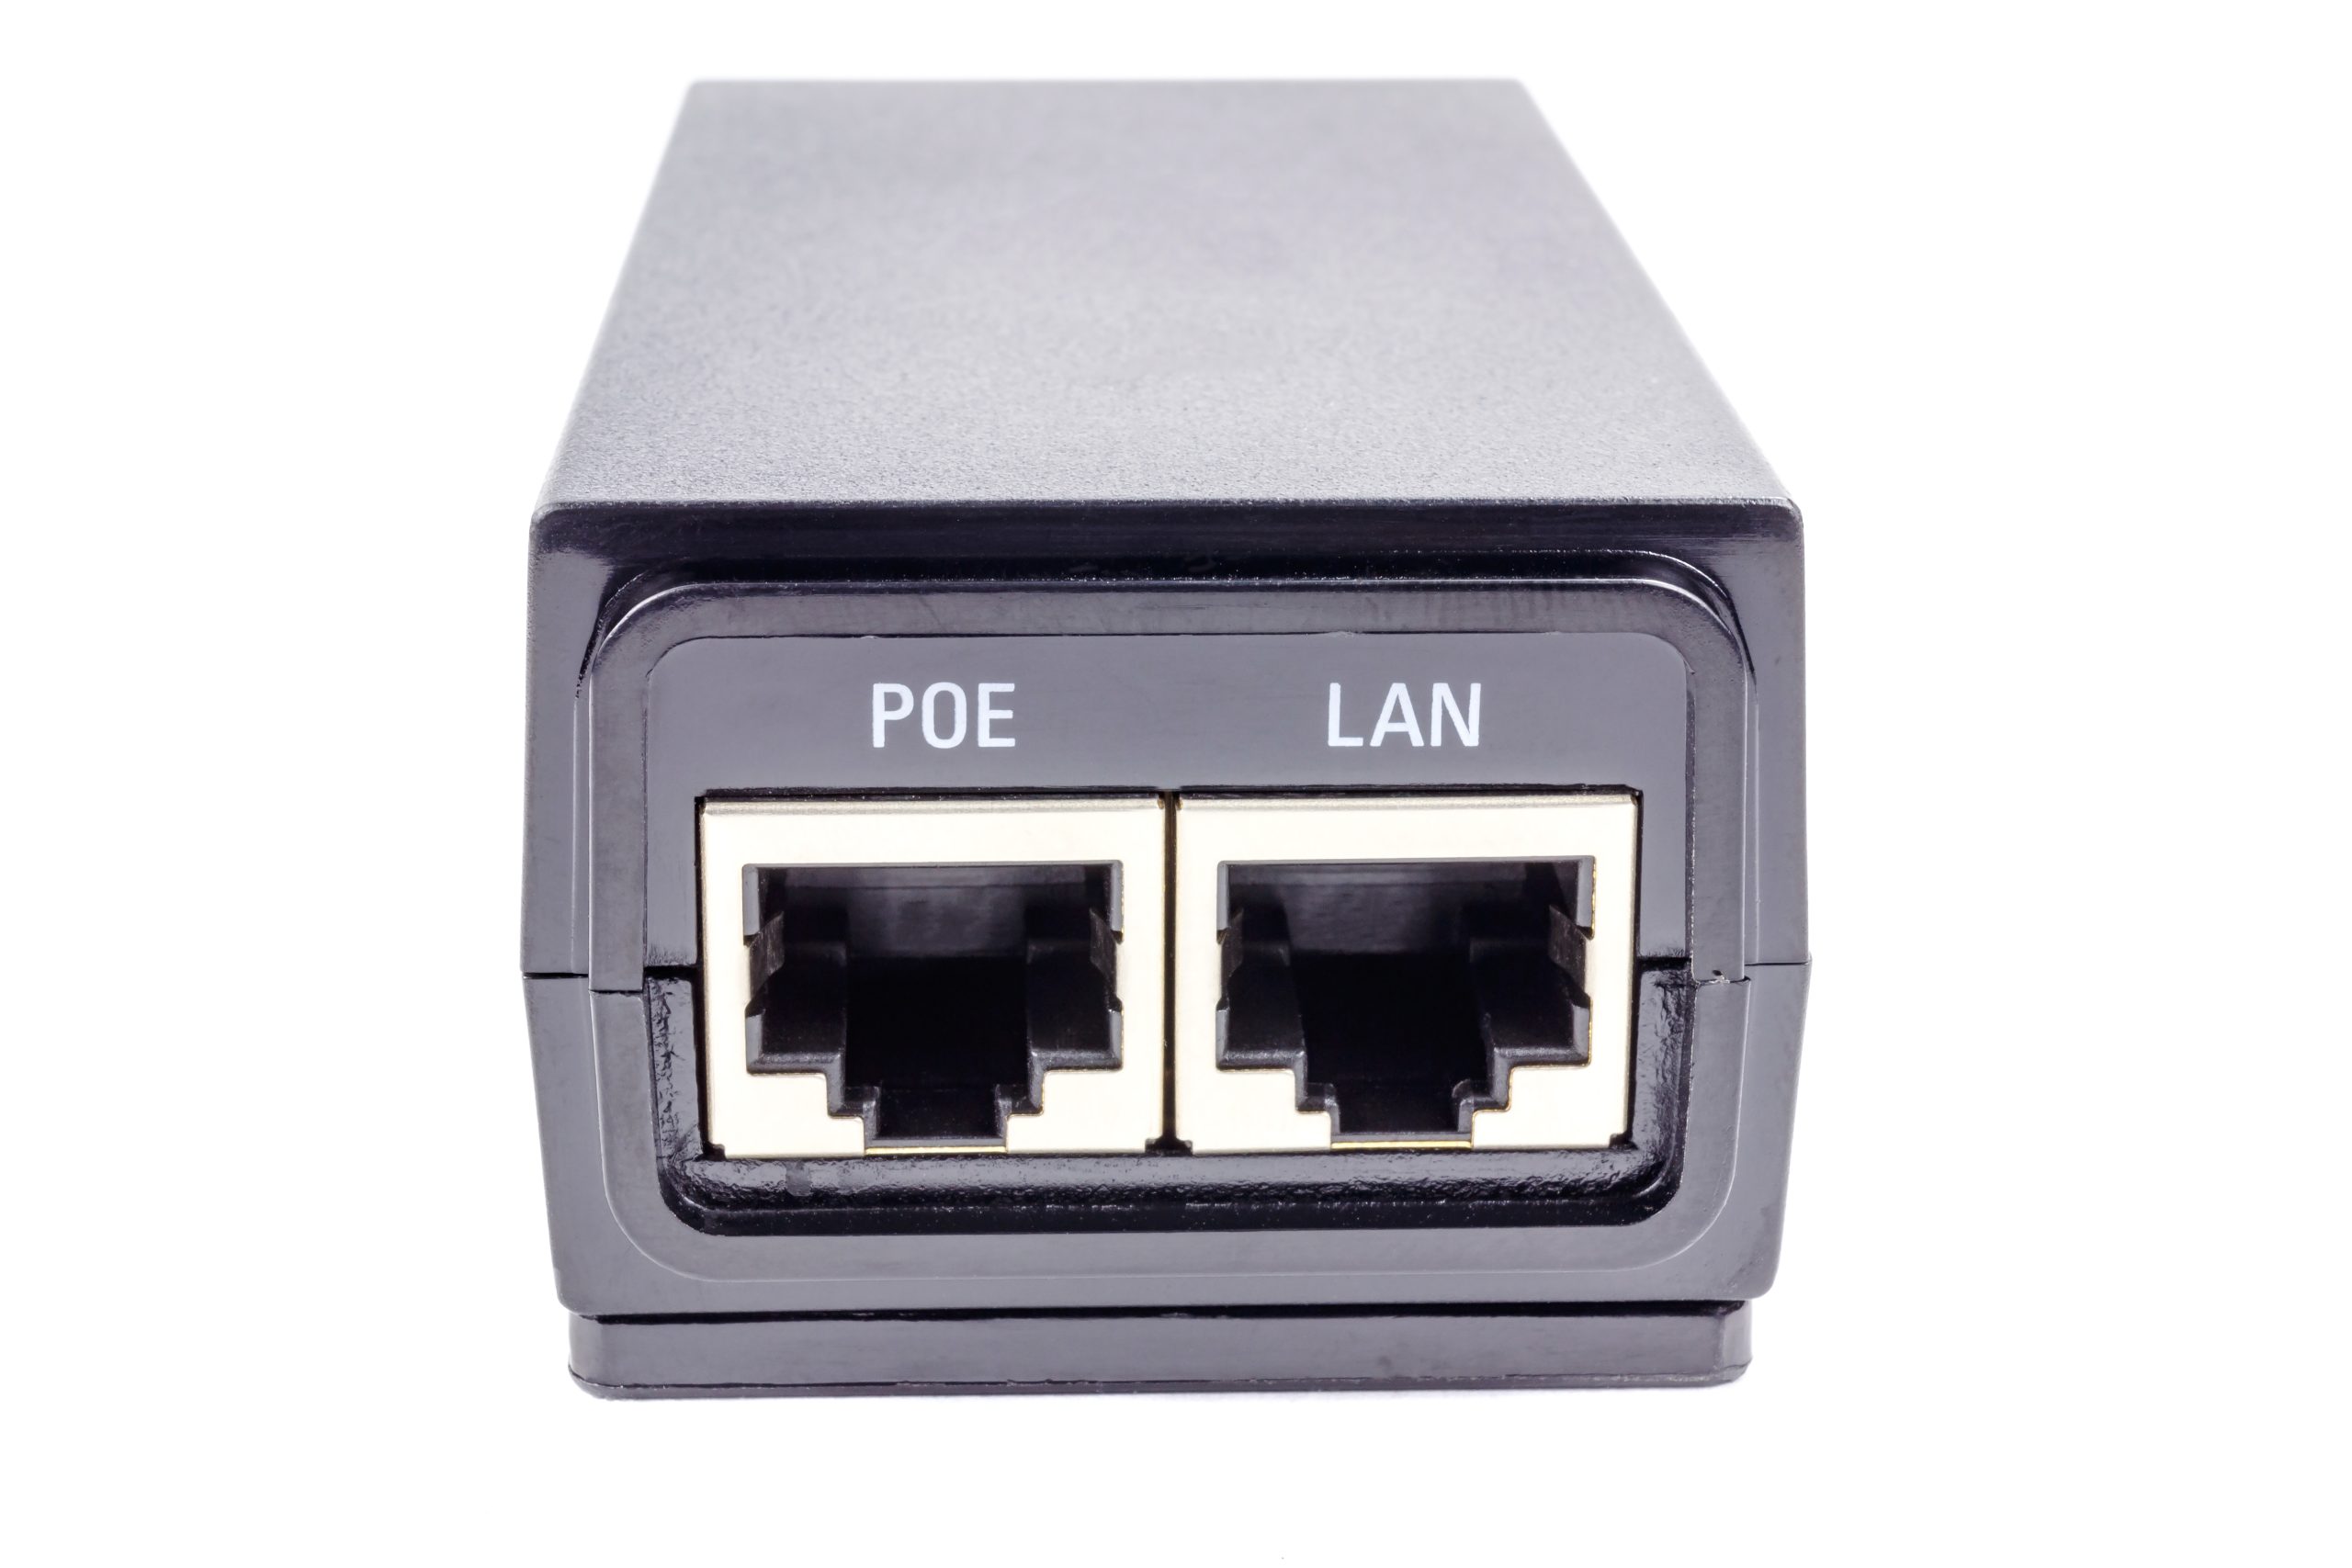 ทำความรู้จัก PoE (Power over Ethernet) เทรนด์ใหม่ของสายแลนในยุค IoT